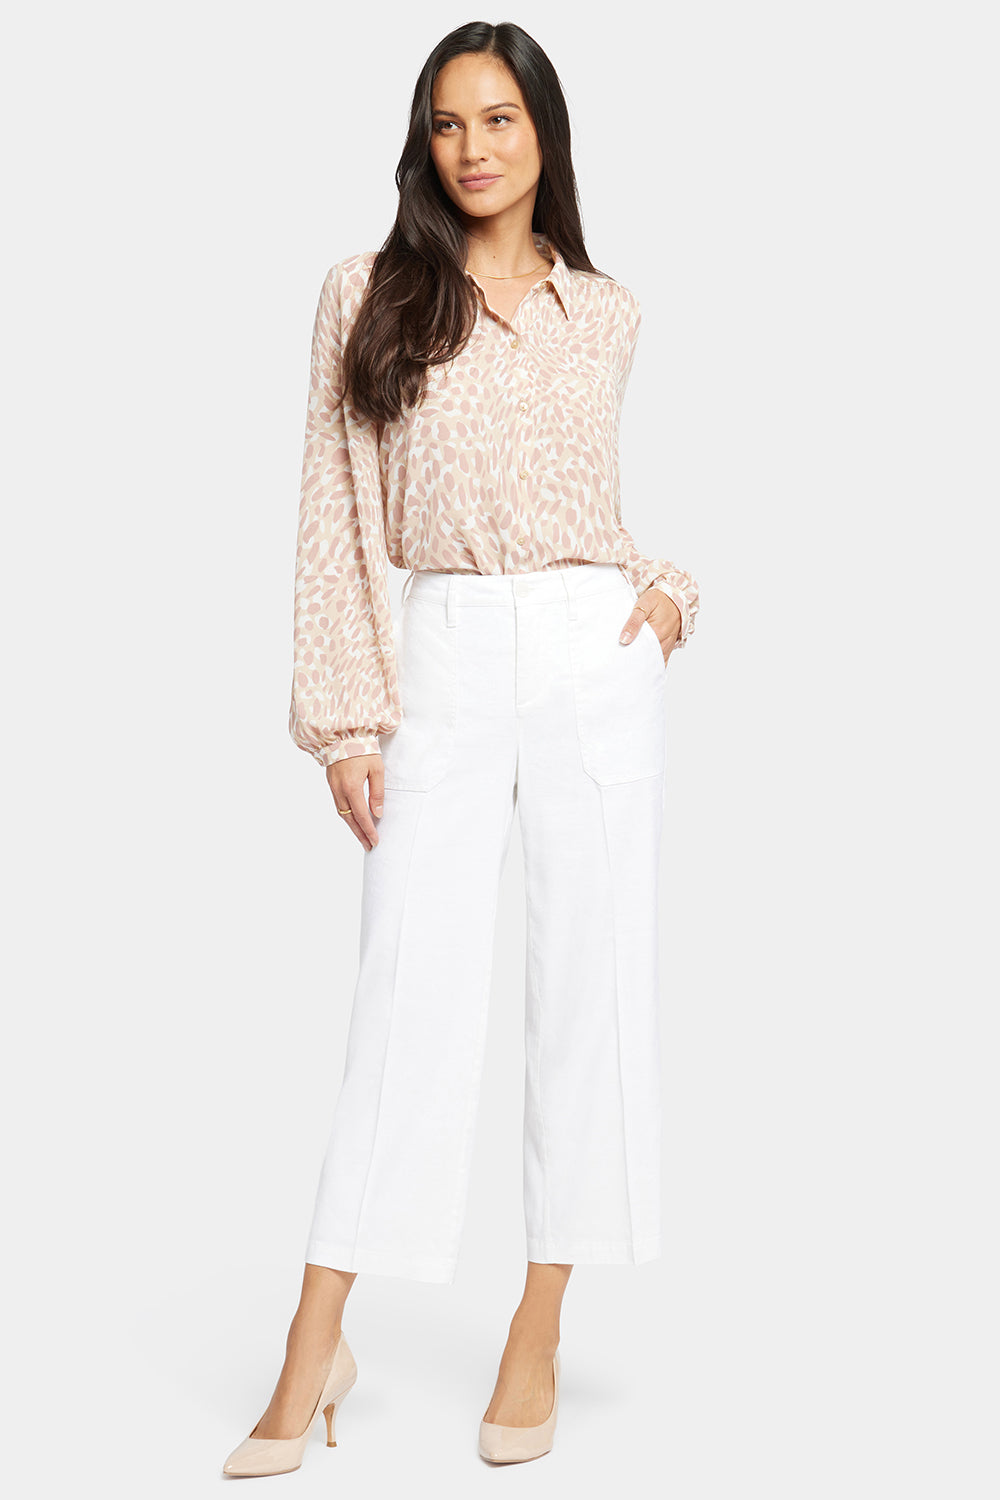 Pantology Women's White Cropped Capri Pants Stretch Cotton Spandex Size 16